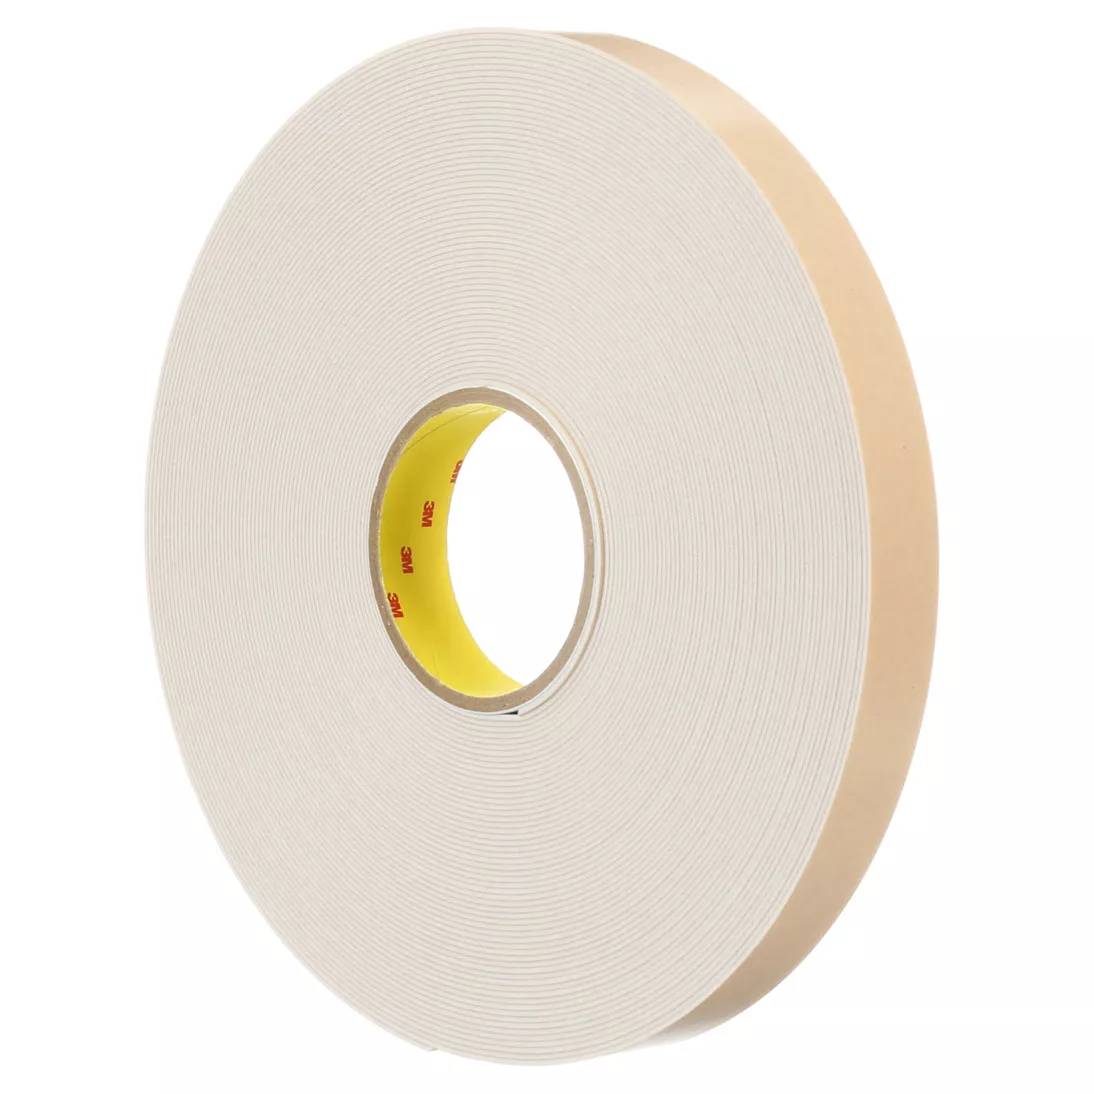 3M™ Double Coated Polyethylene Foam Tape 4496W, White, 1 1/2 in x 36 yd,
62 mil, 6 rolls per case